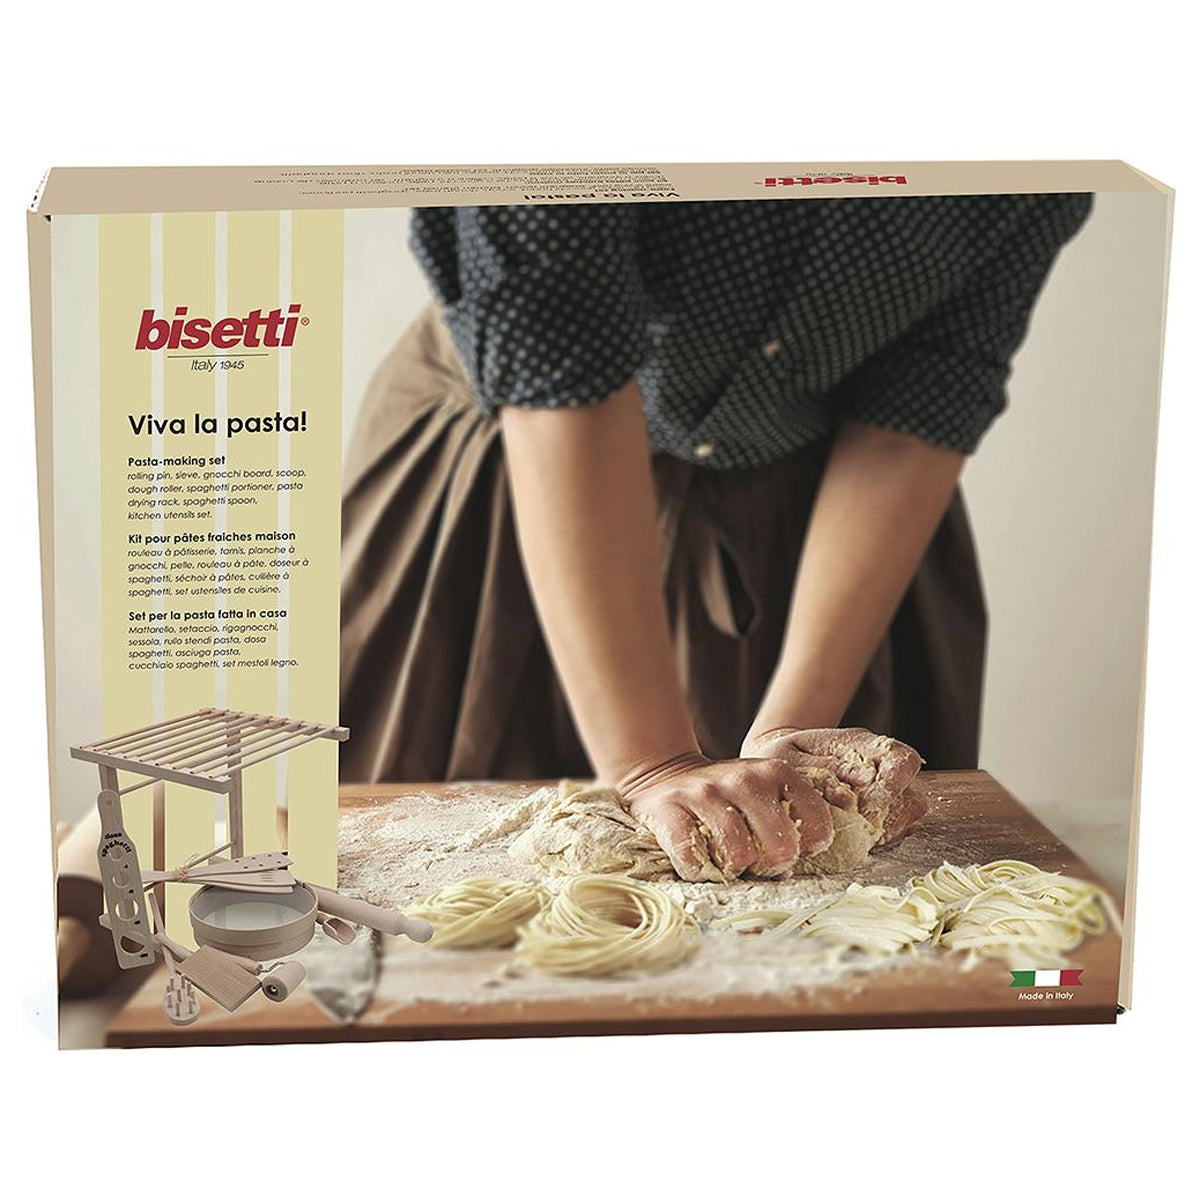 Homemade Pasta Making Kit